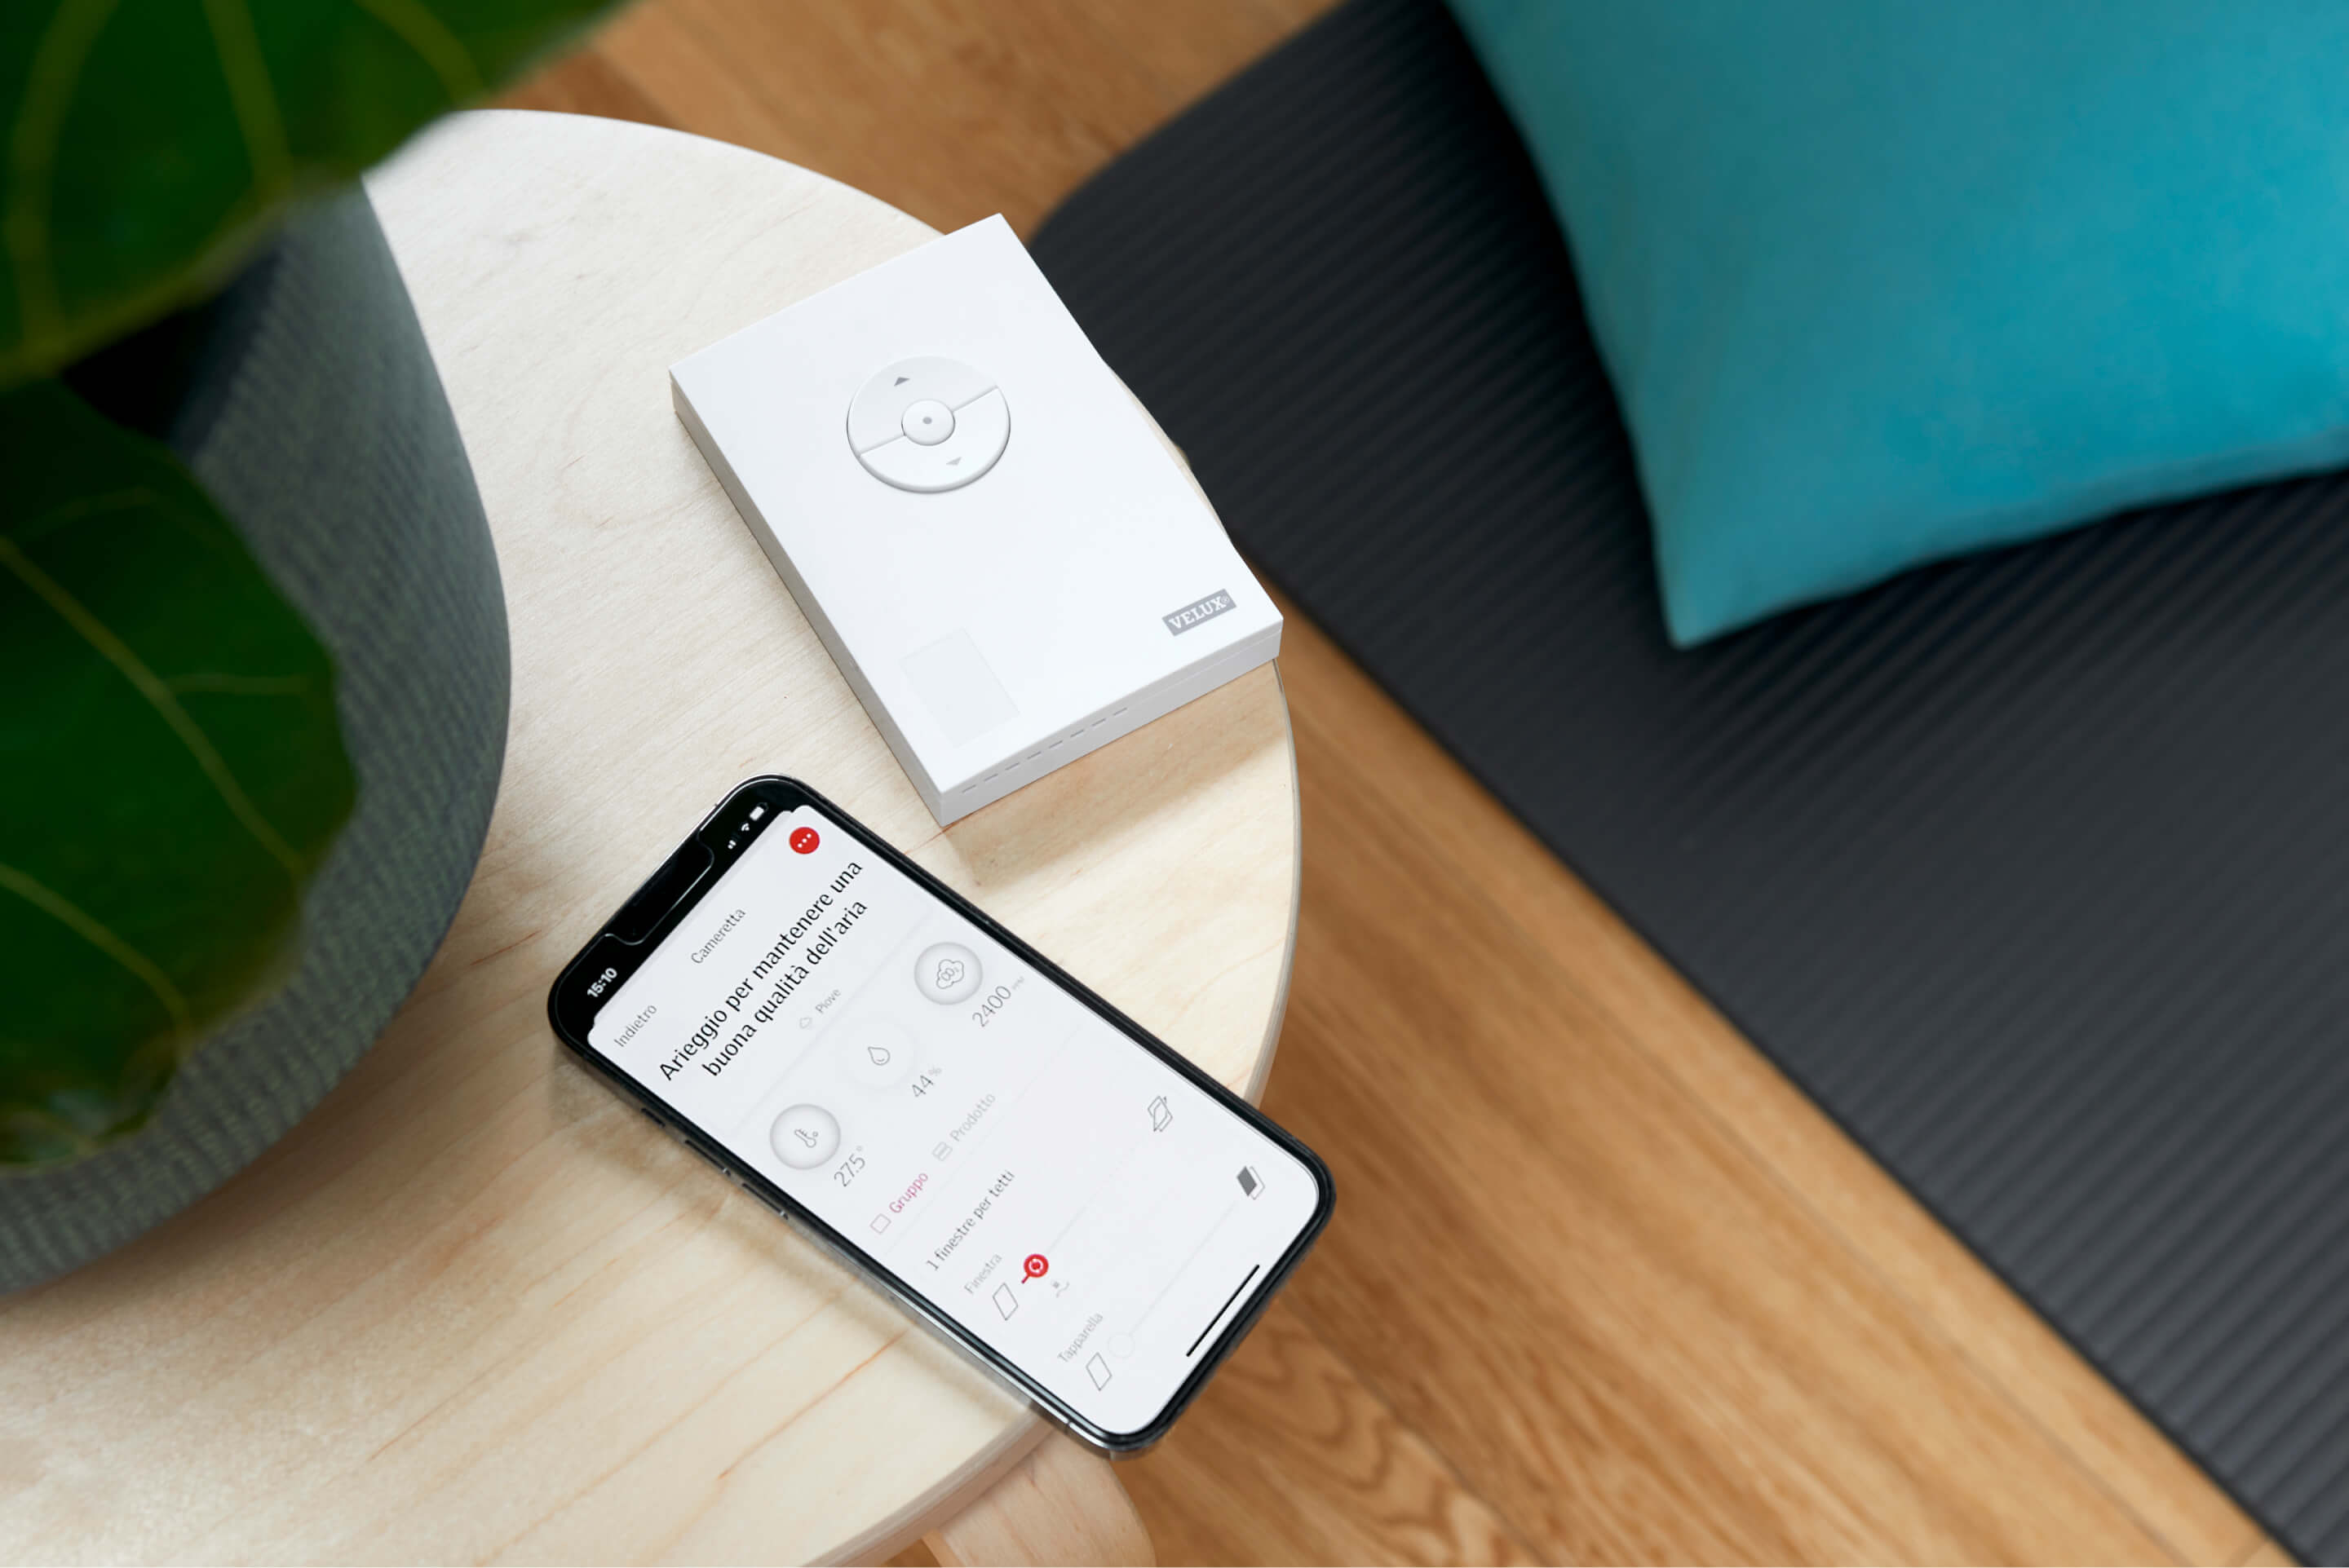 Smartphone mit einer App zur Heim-Kontrolle neben einem verpackten Smart-Gerät auf einem Tisch.